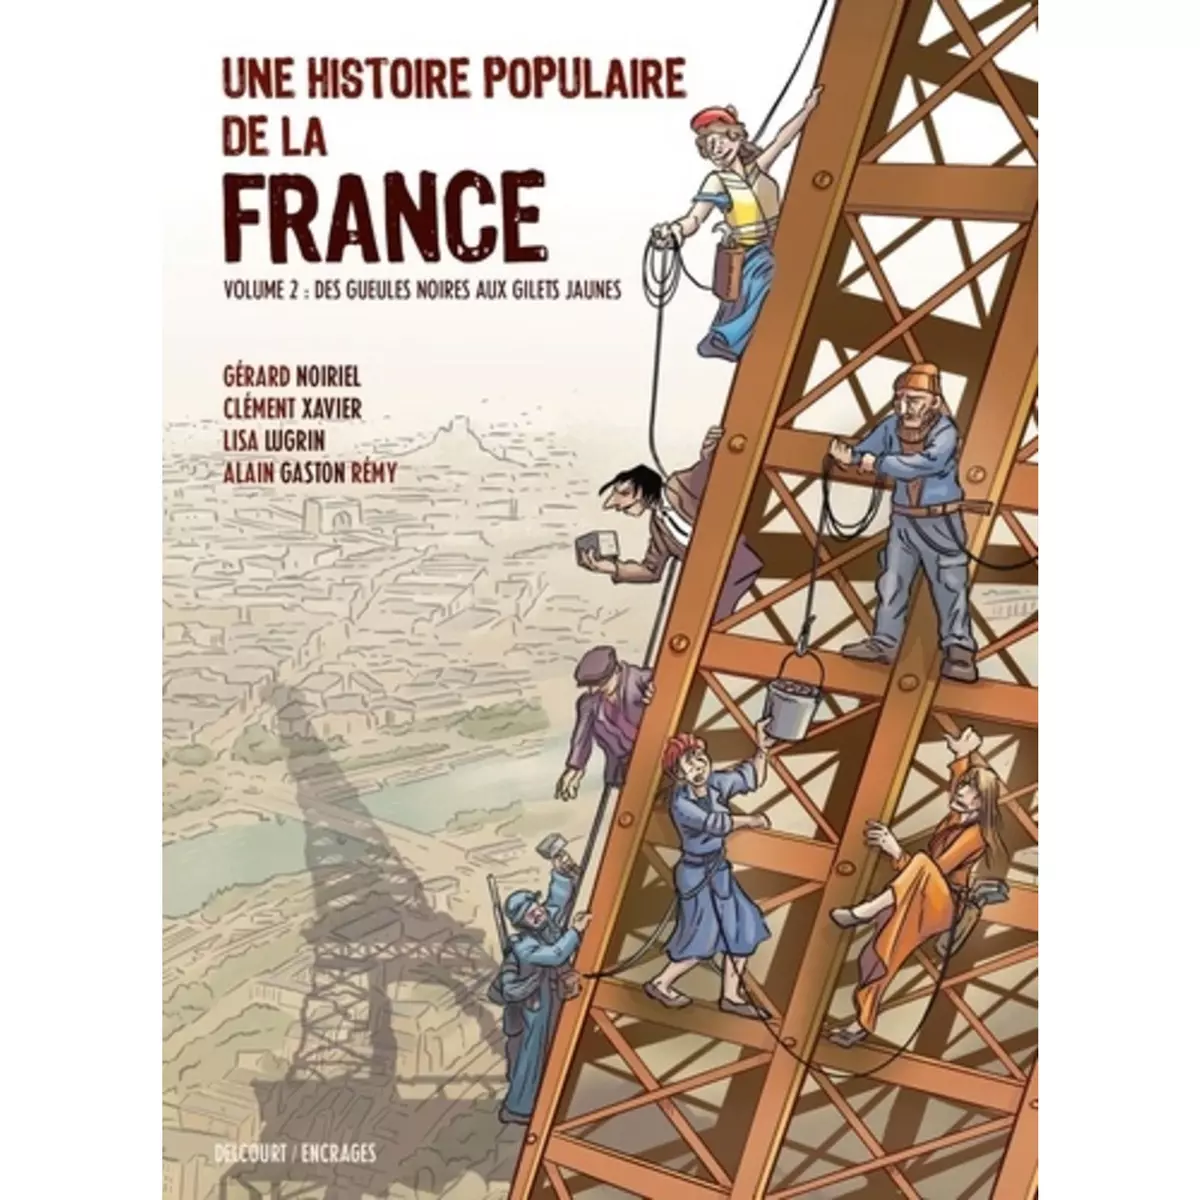  UNE HISTOIRE POPULAIRE DE LA FRANCE TOME 2 : DES GUEULES NOIRES AUX GILETS JAUNES, Lugrin Lisa